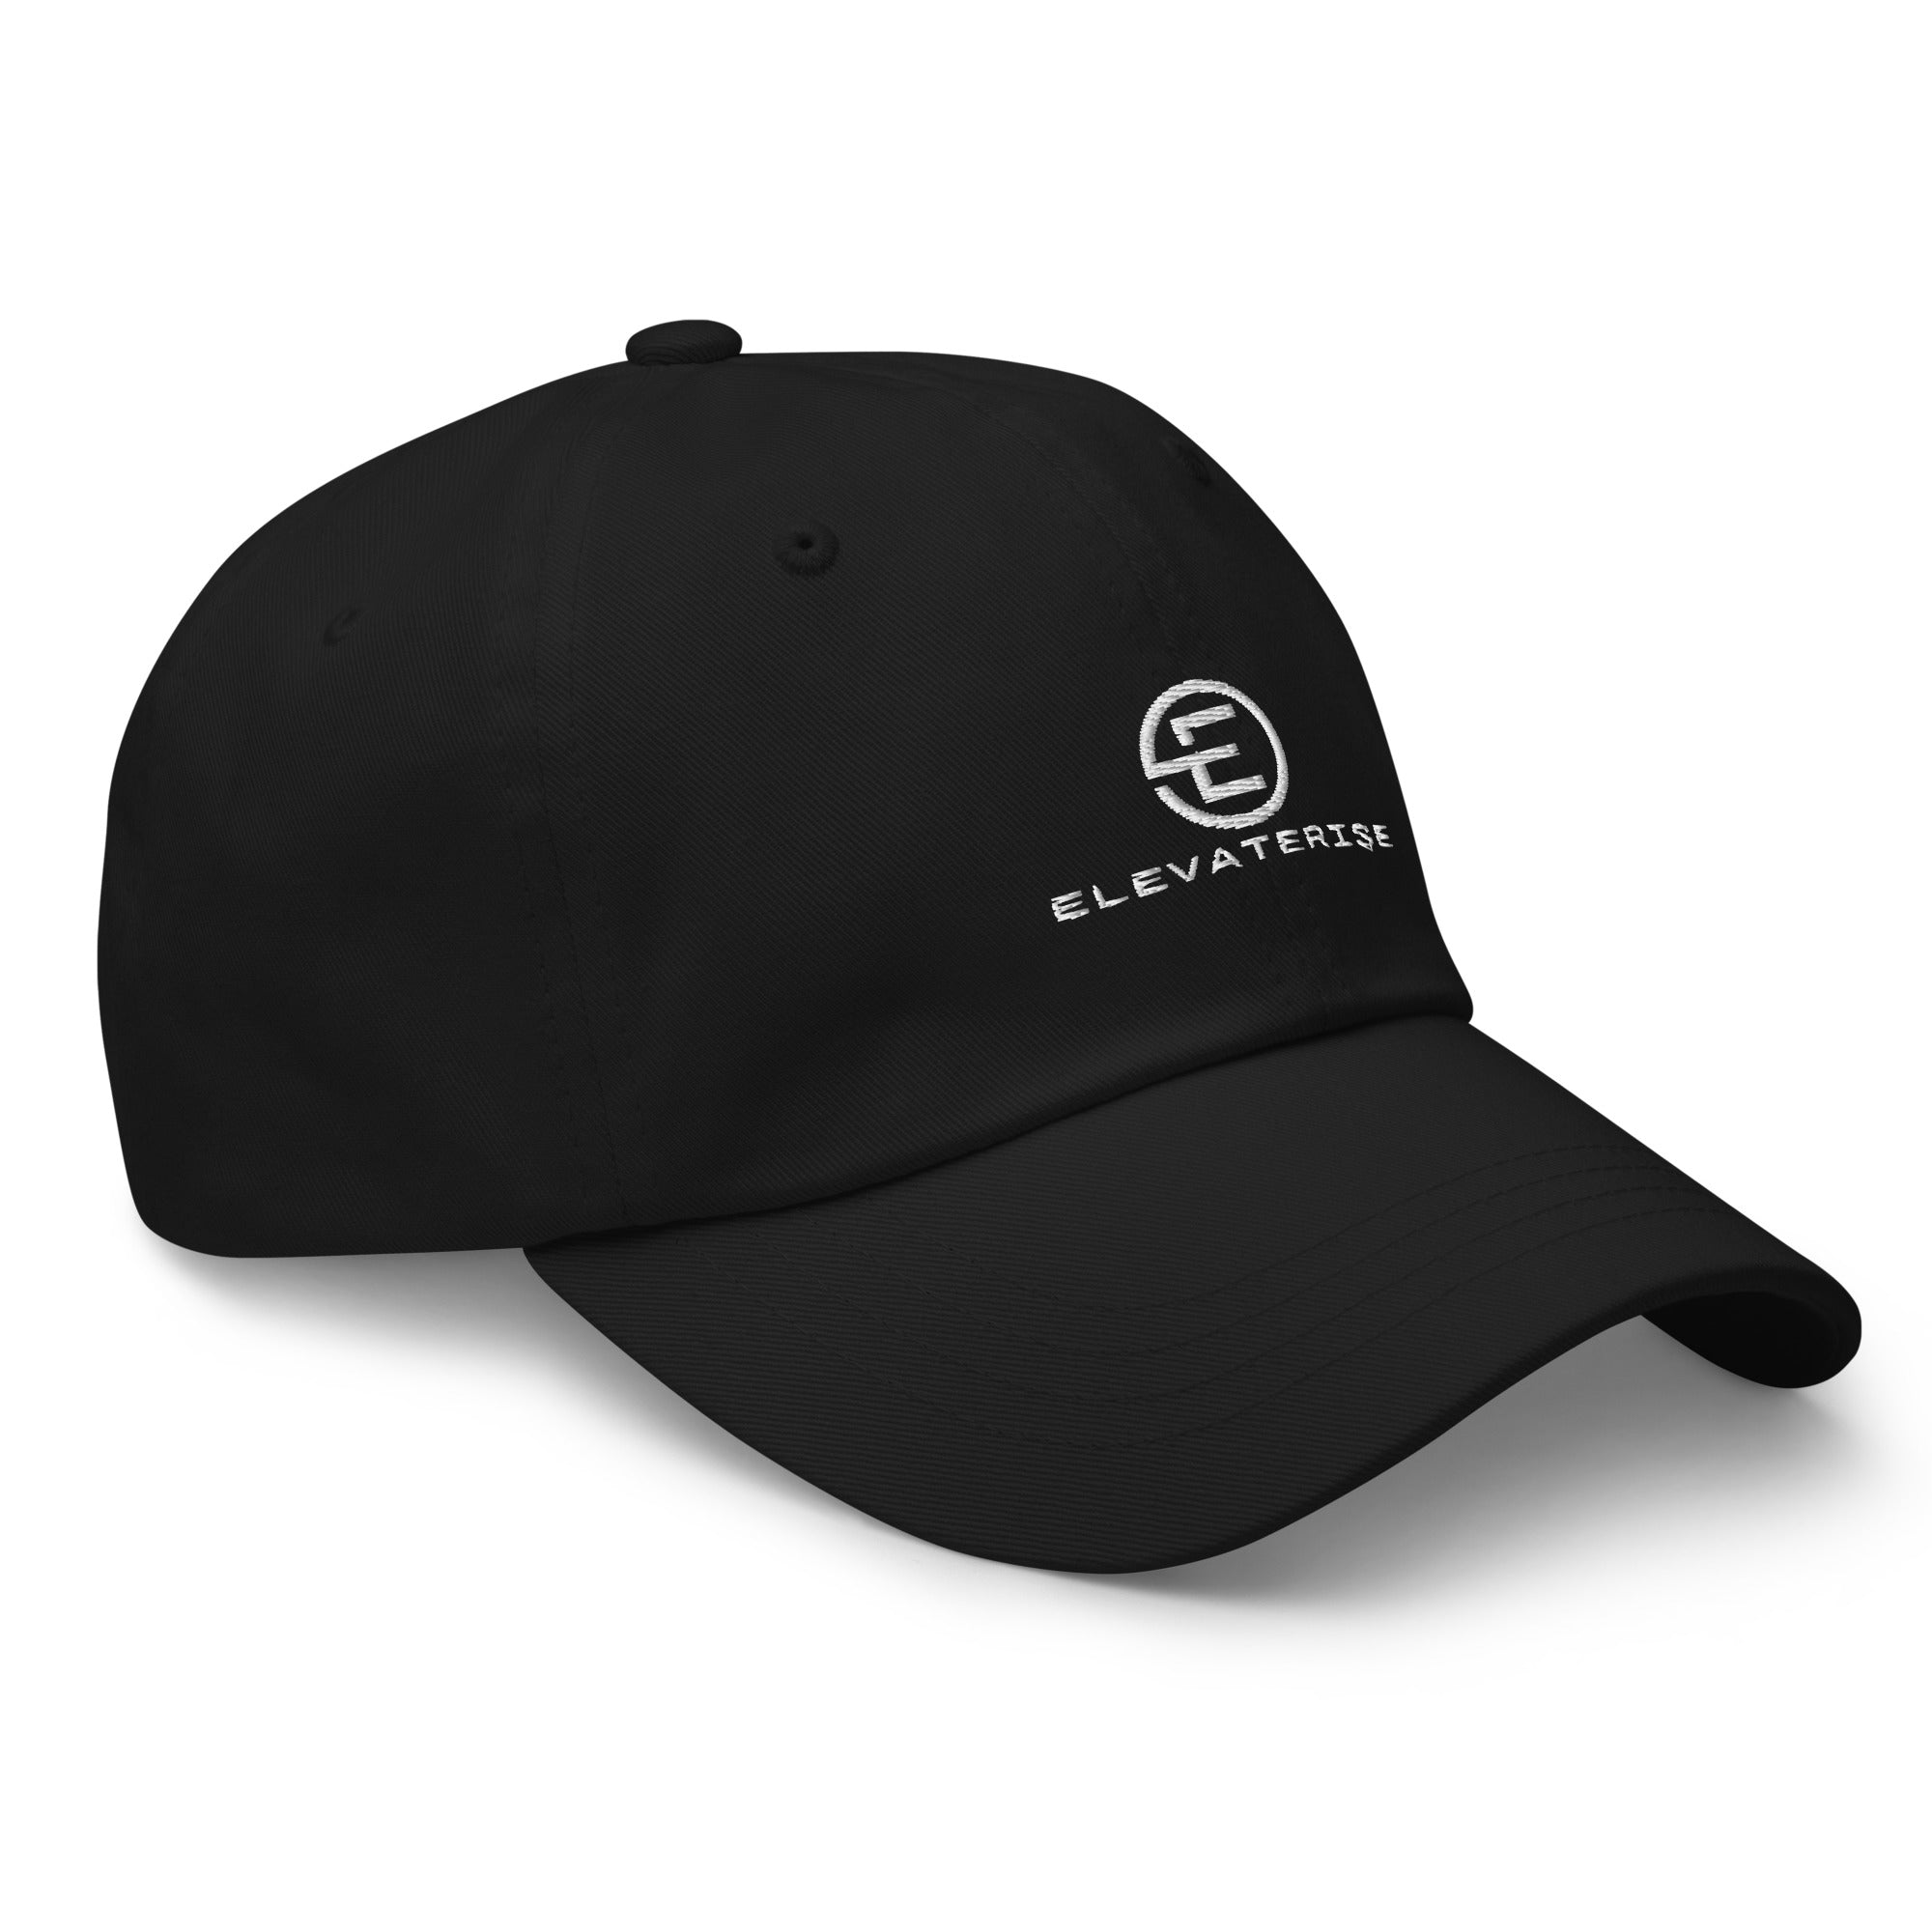 ElevateRise hat